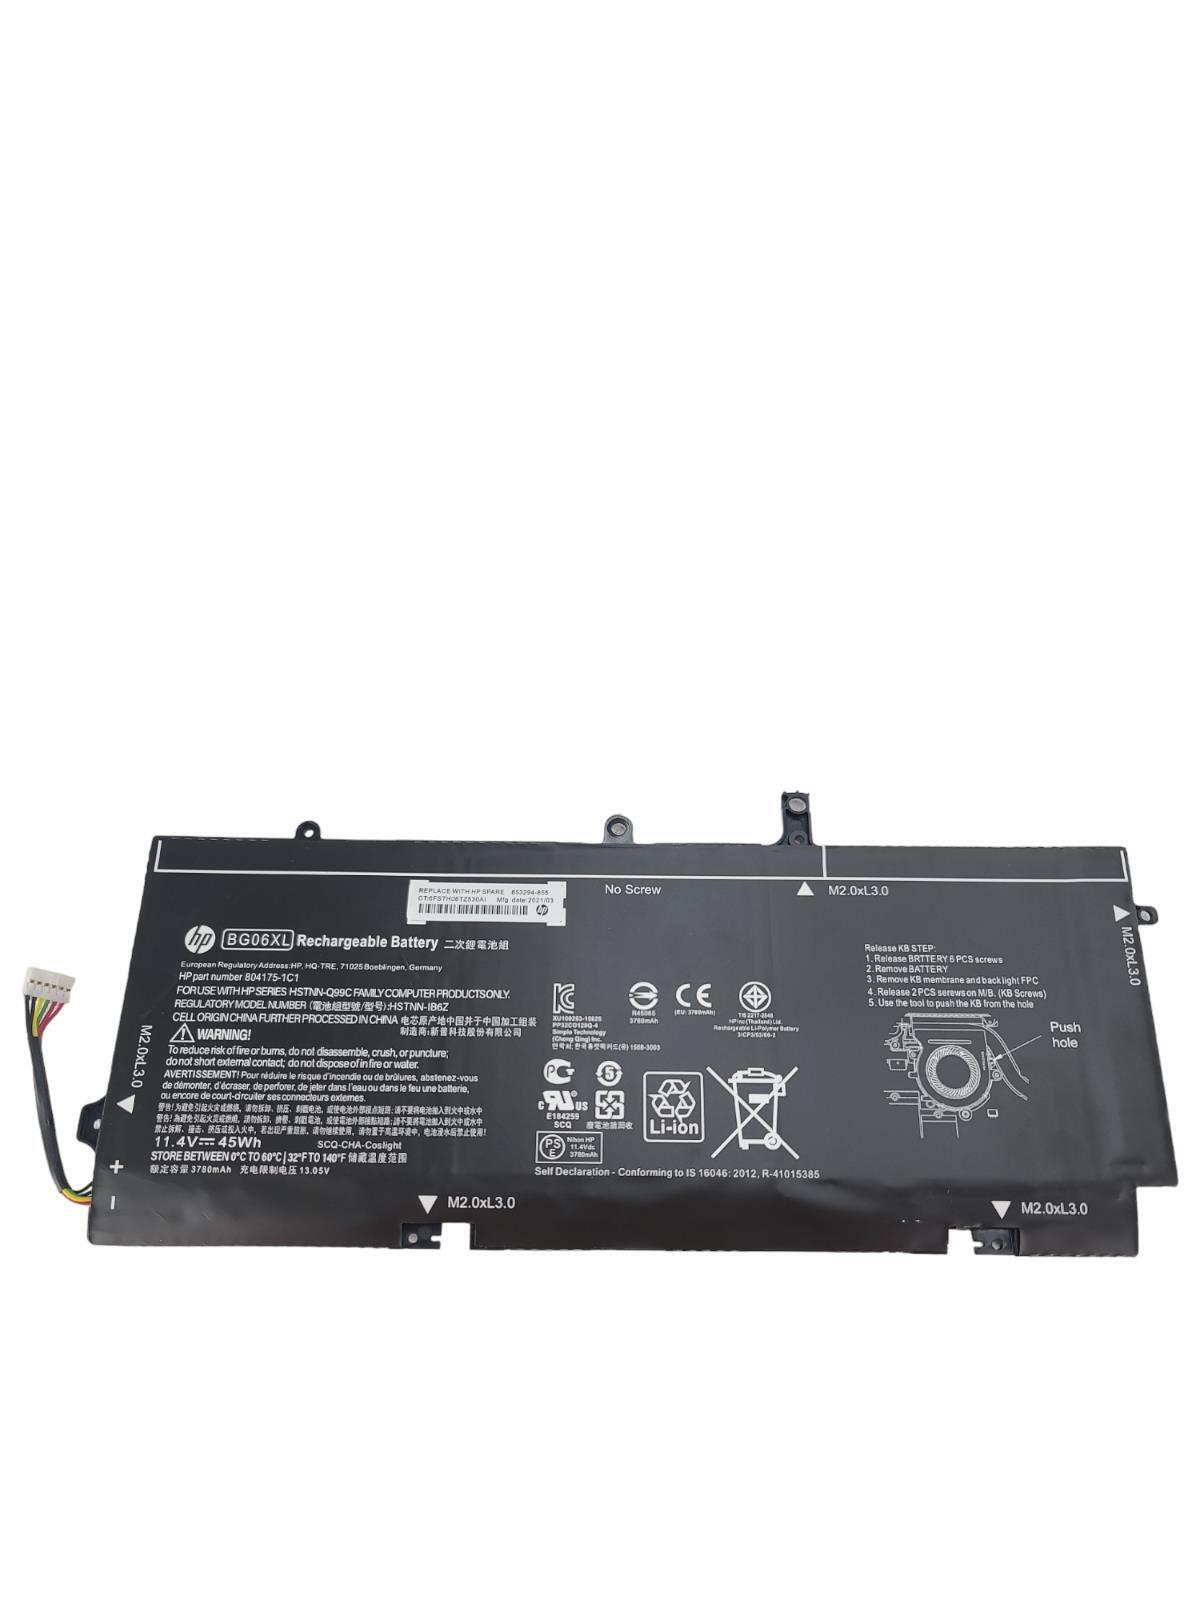 BG06XL Laptop Battery for HP EliteBook 1040 G3 Series BG06045XL 804175-181 11.4V